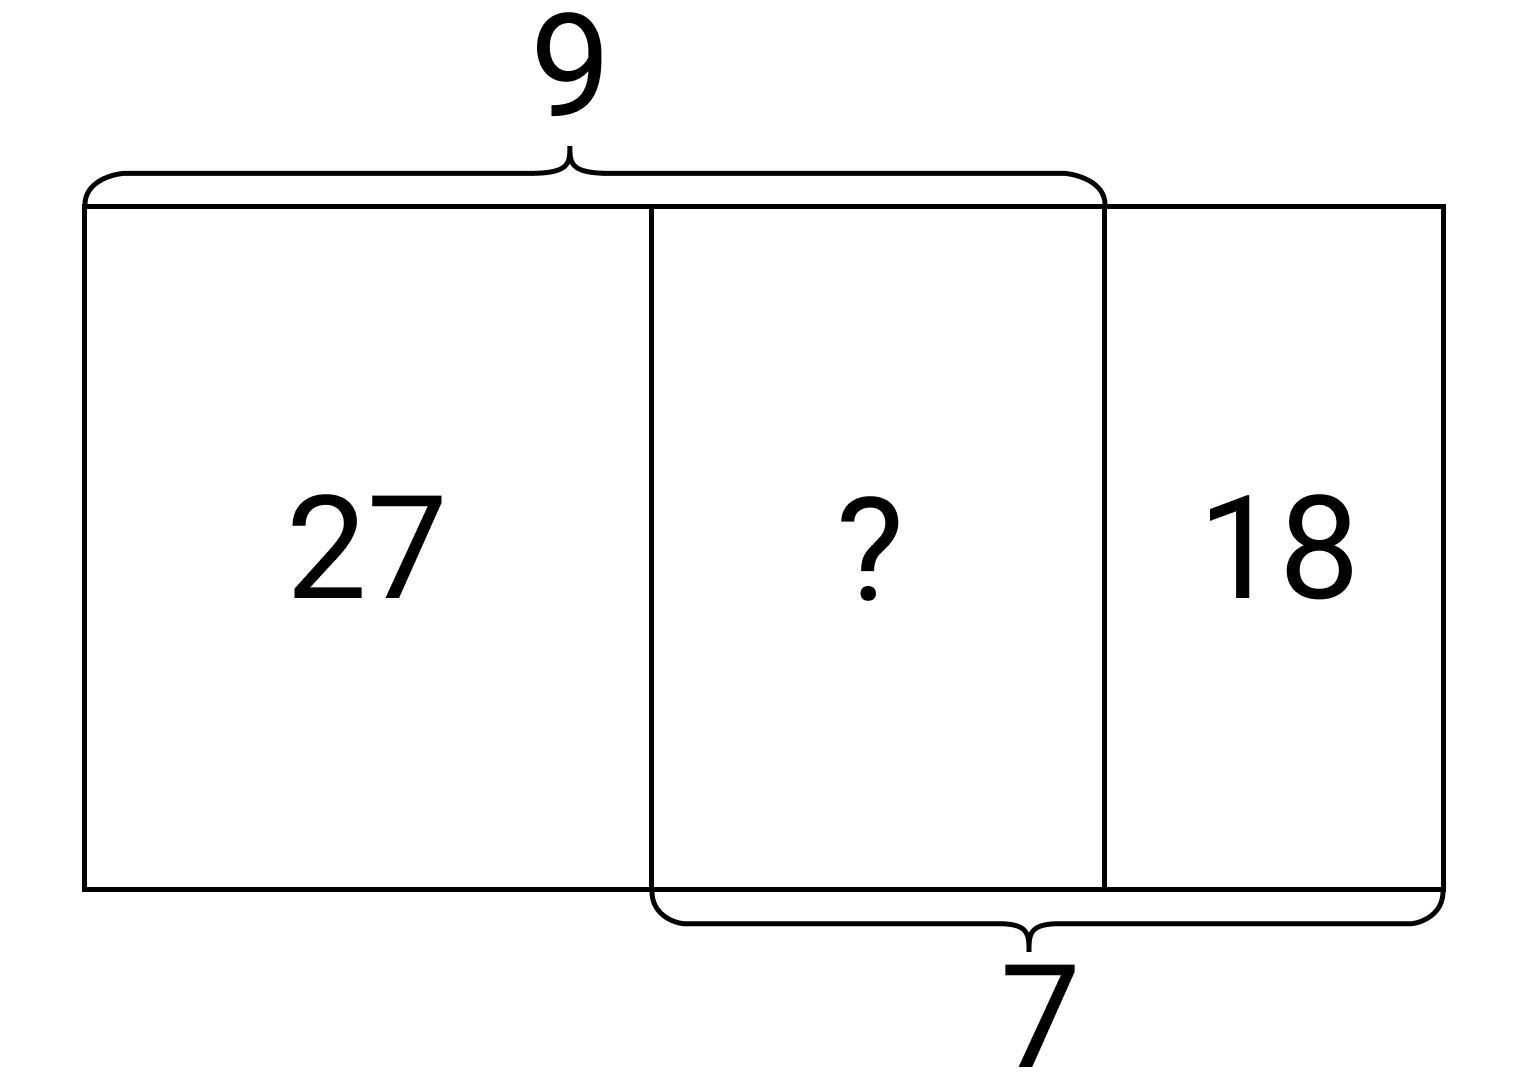 Прямоугольную полоску длины 16 разрезали на две полоски длин 9 и 7